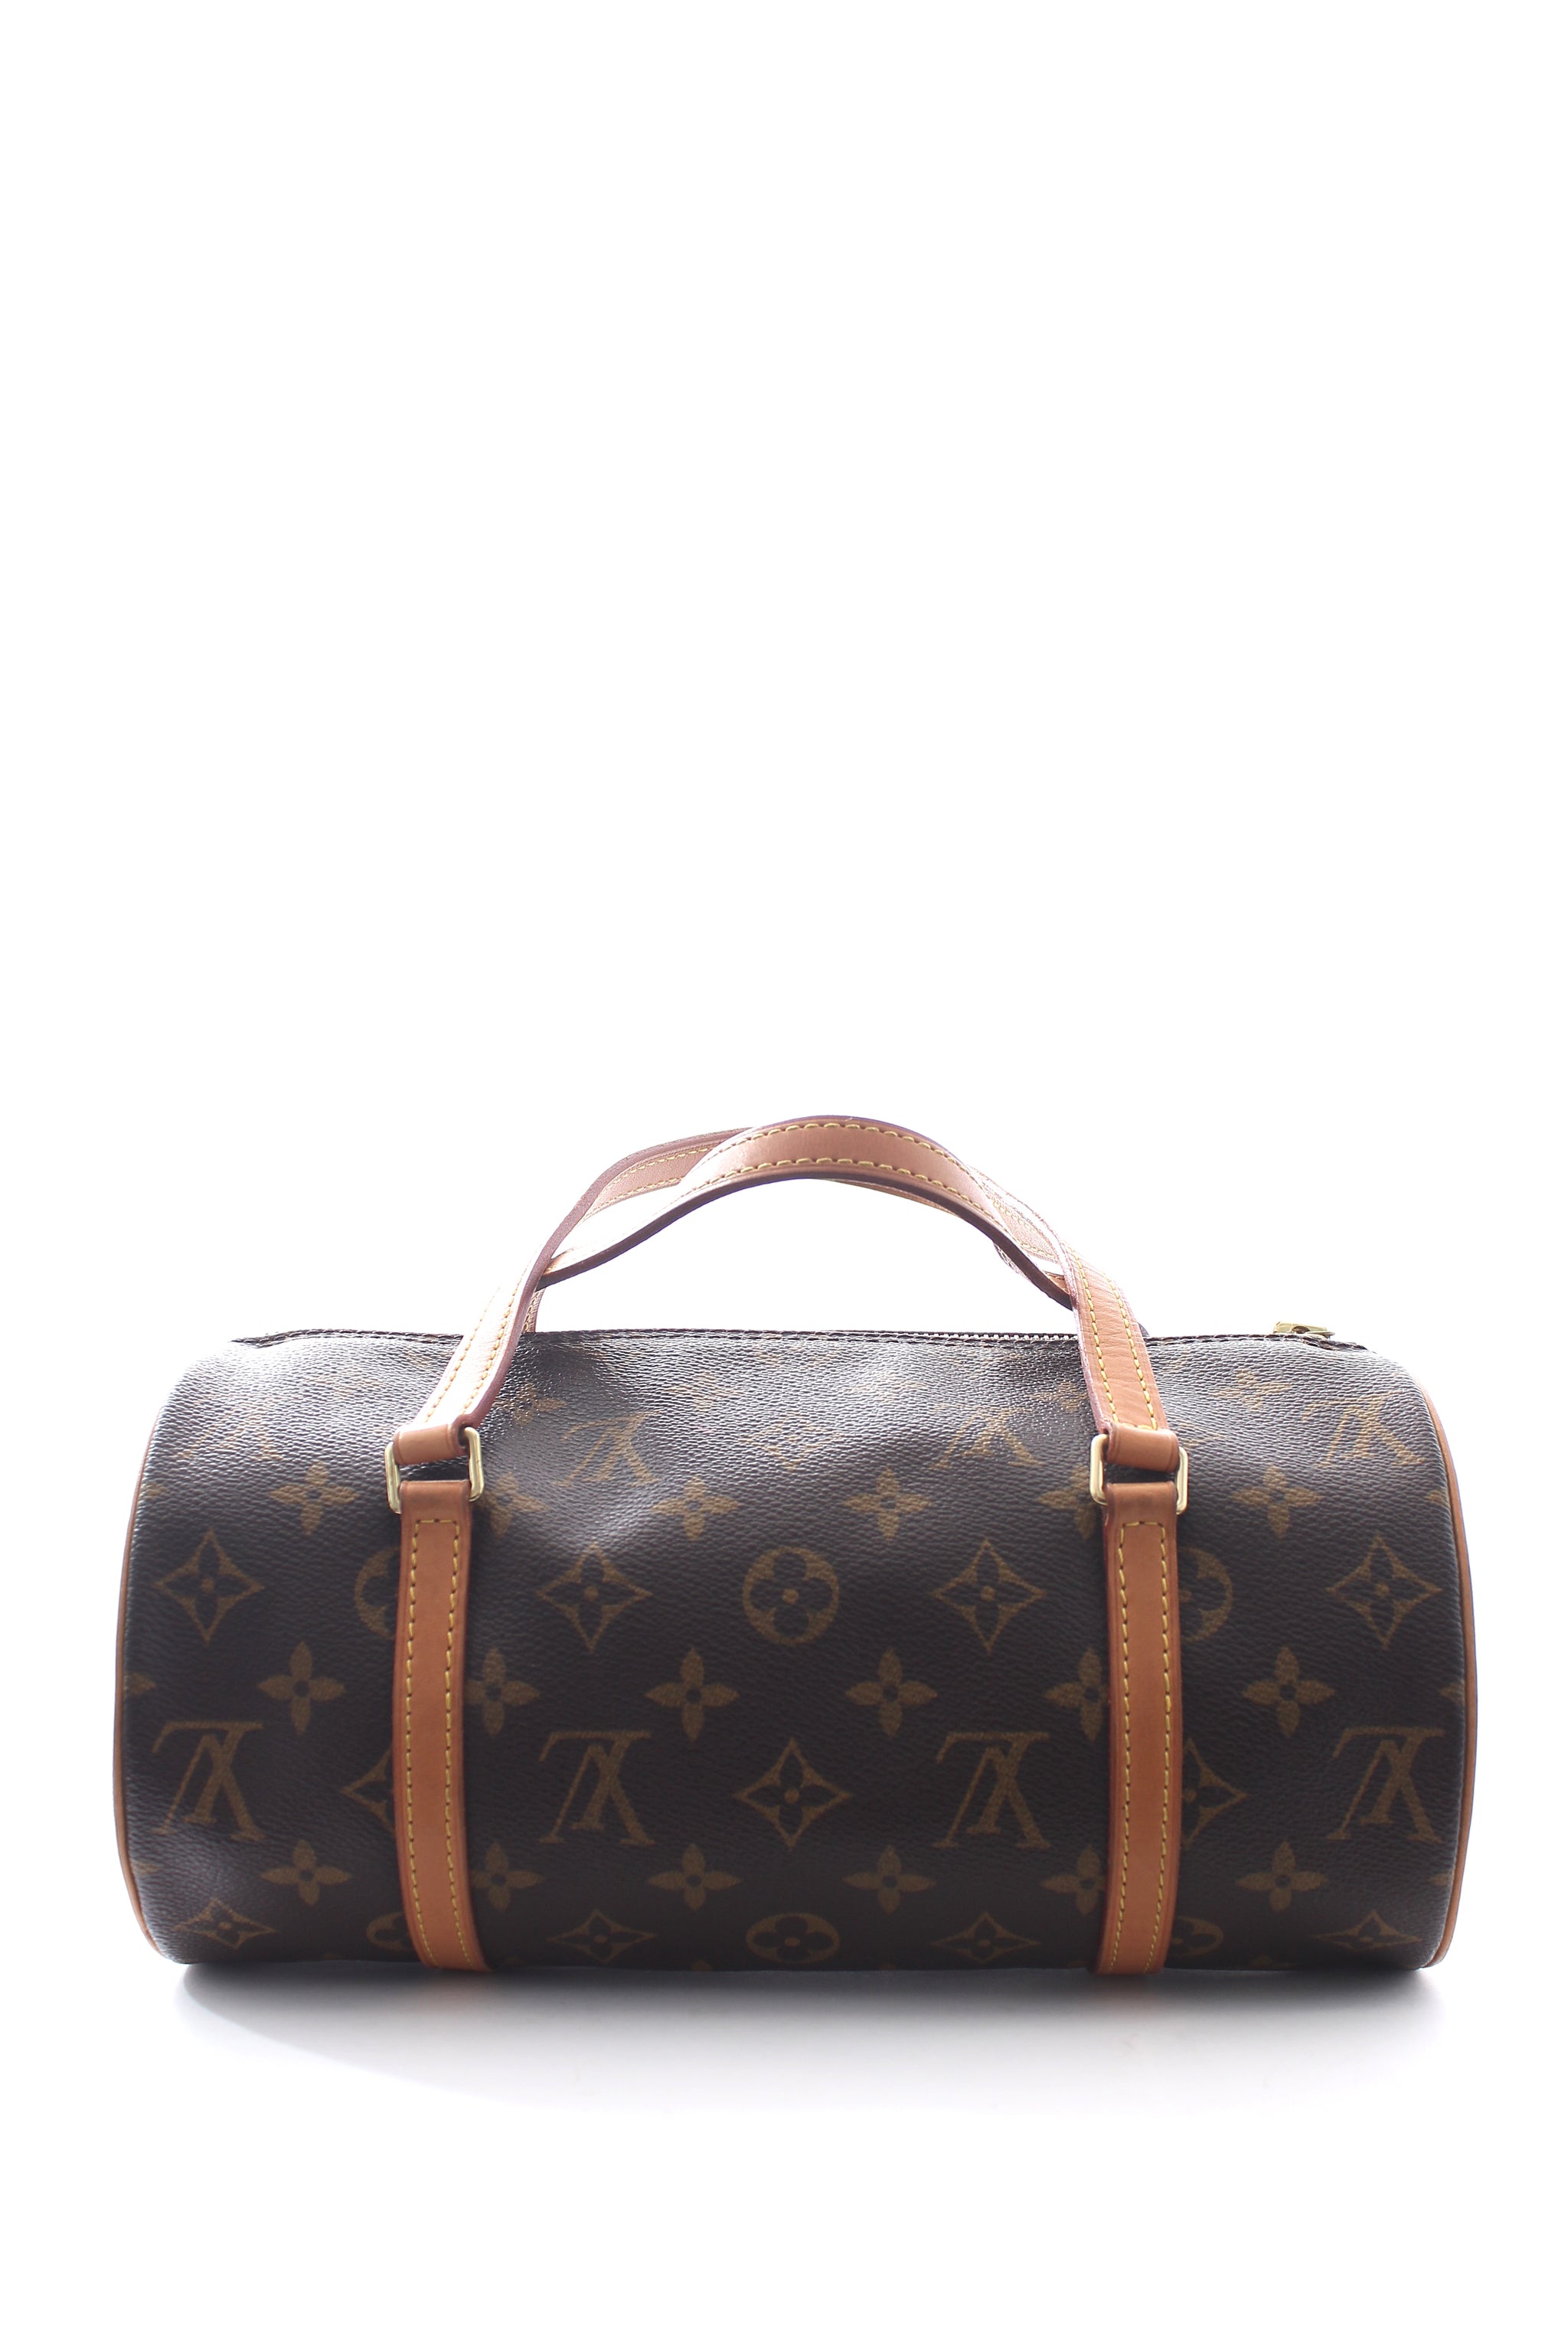 Louis Vuitton Papillon Monogram Canvas Barrel Bag - Closet Upgrade